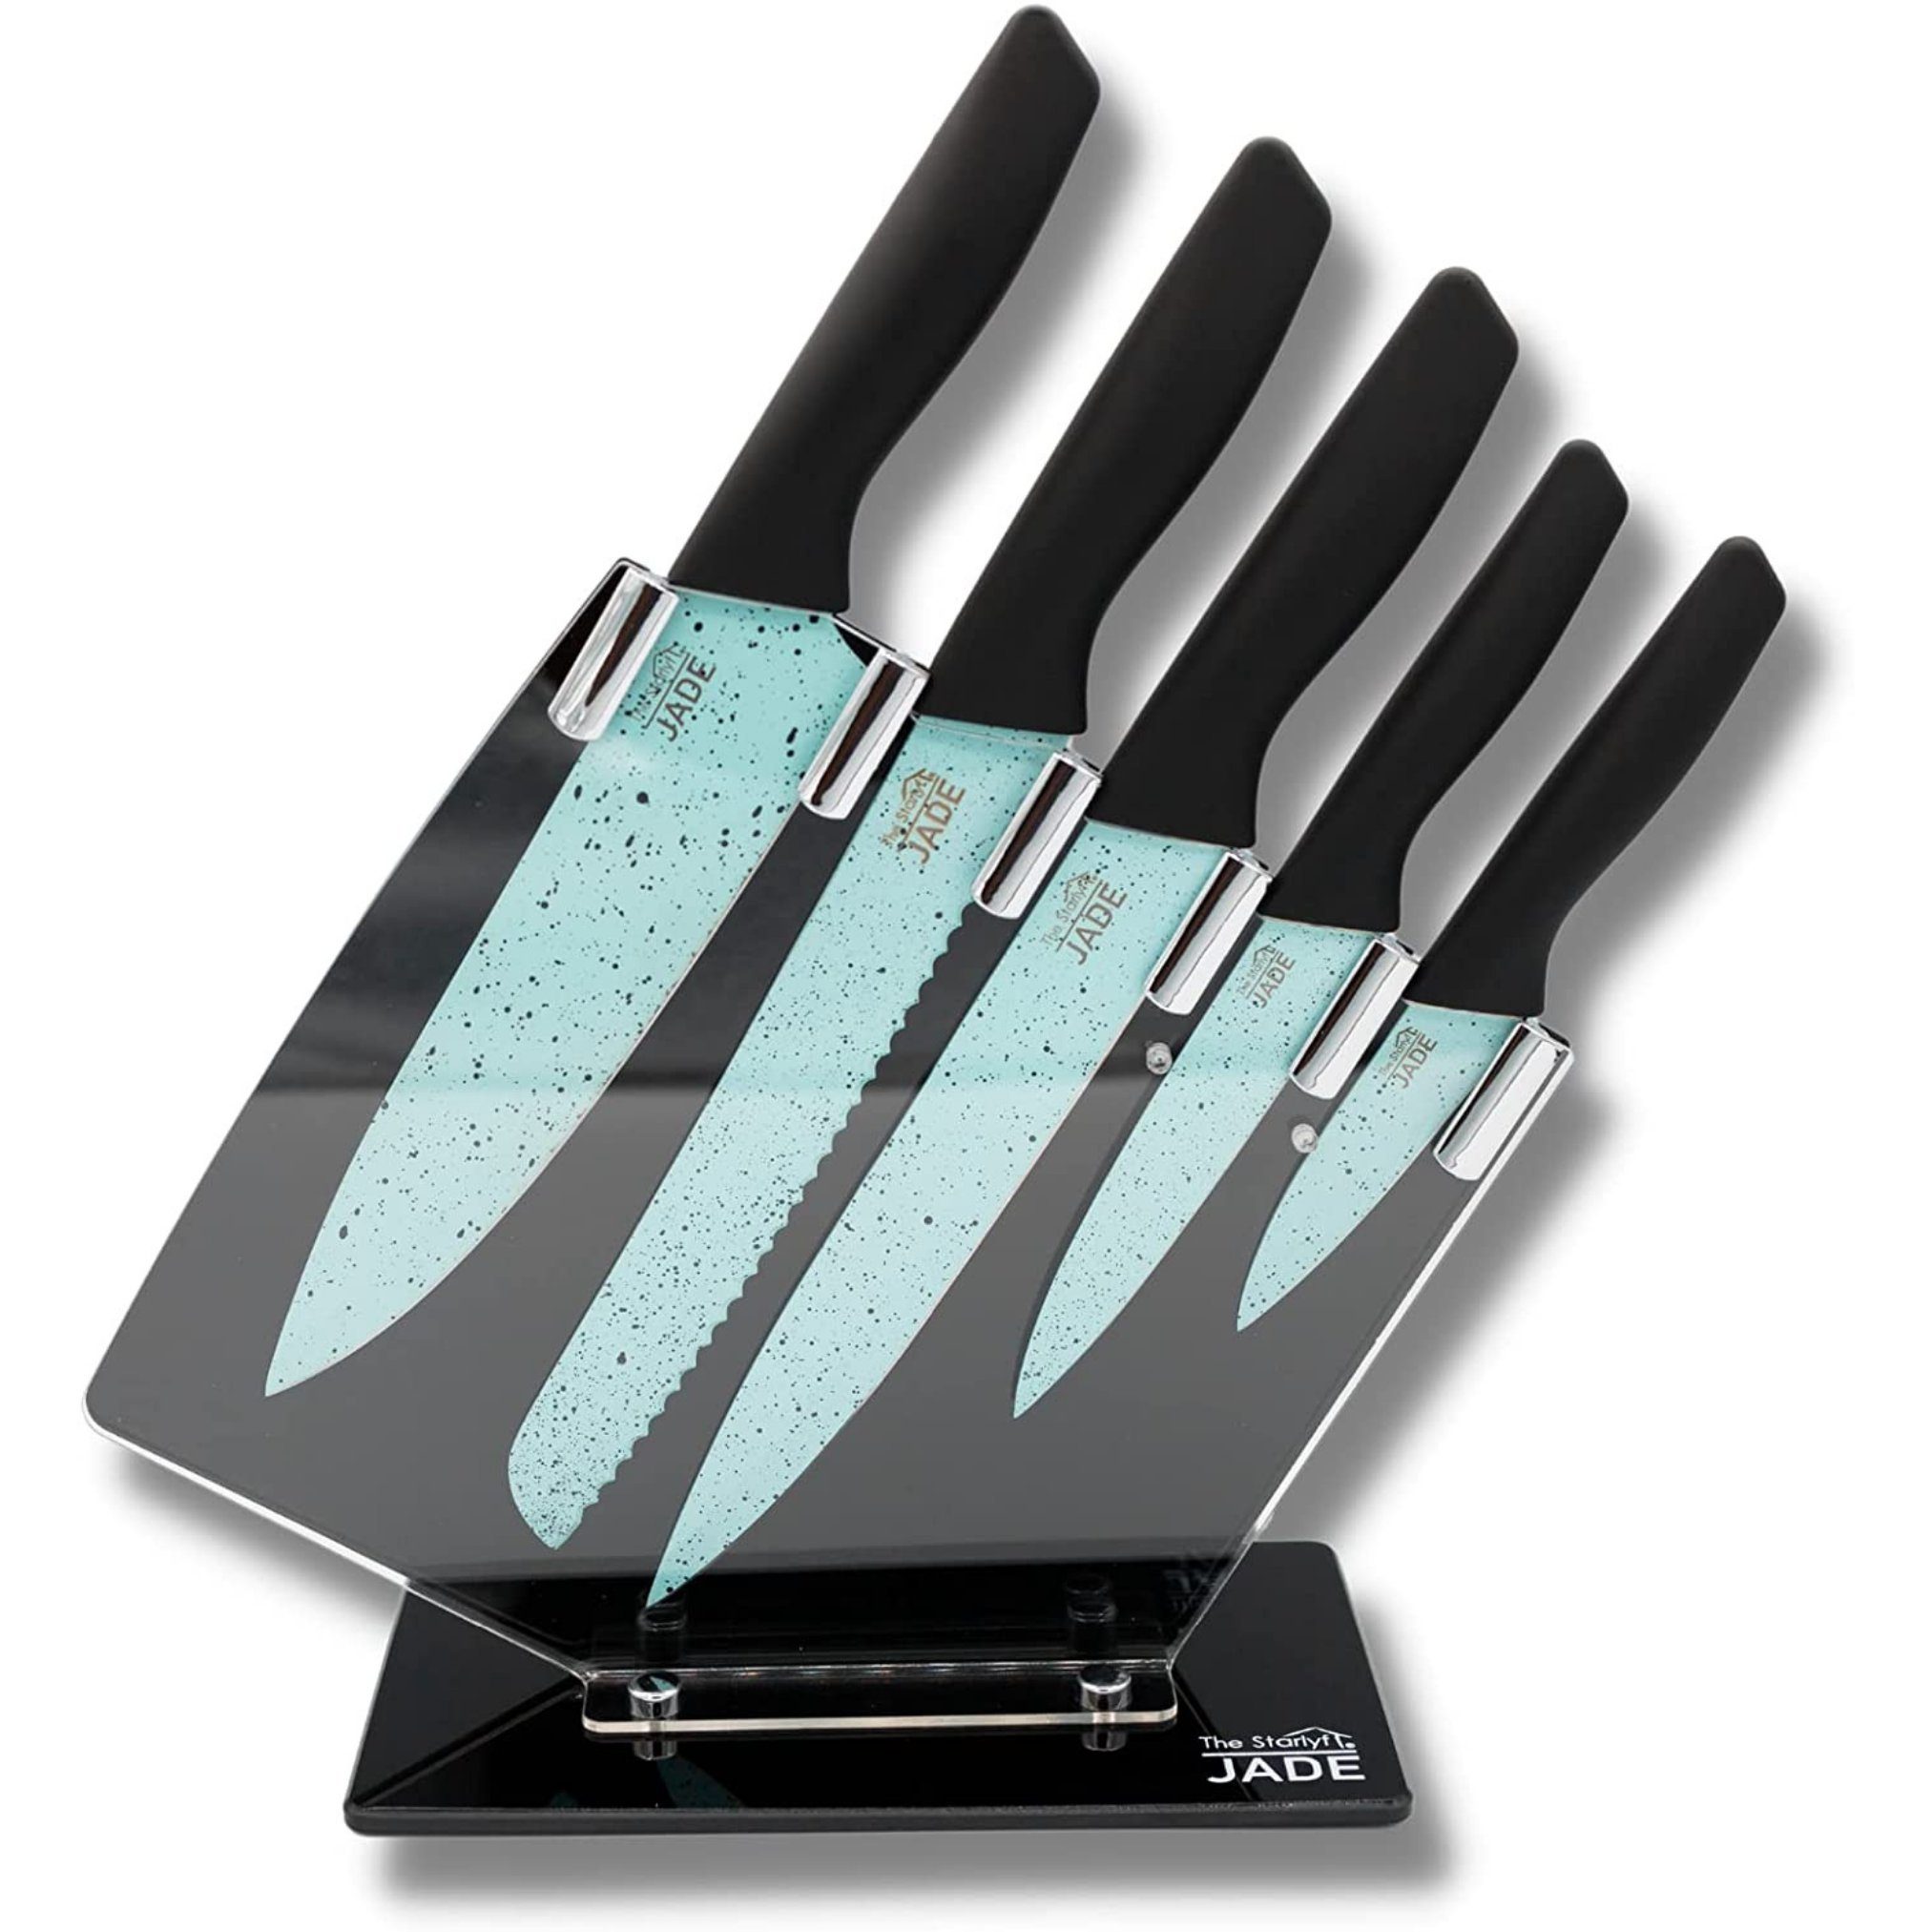 Starlyf Messer-Set Jade Knife Series + Stand (Set, 6-tlg), Set aus 5 Messern mit Jadepulverbeschichtung und Messerständer